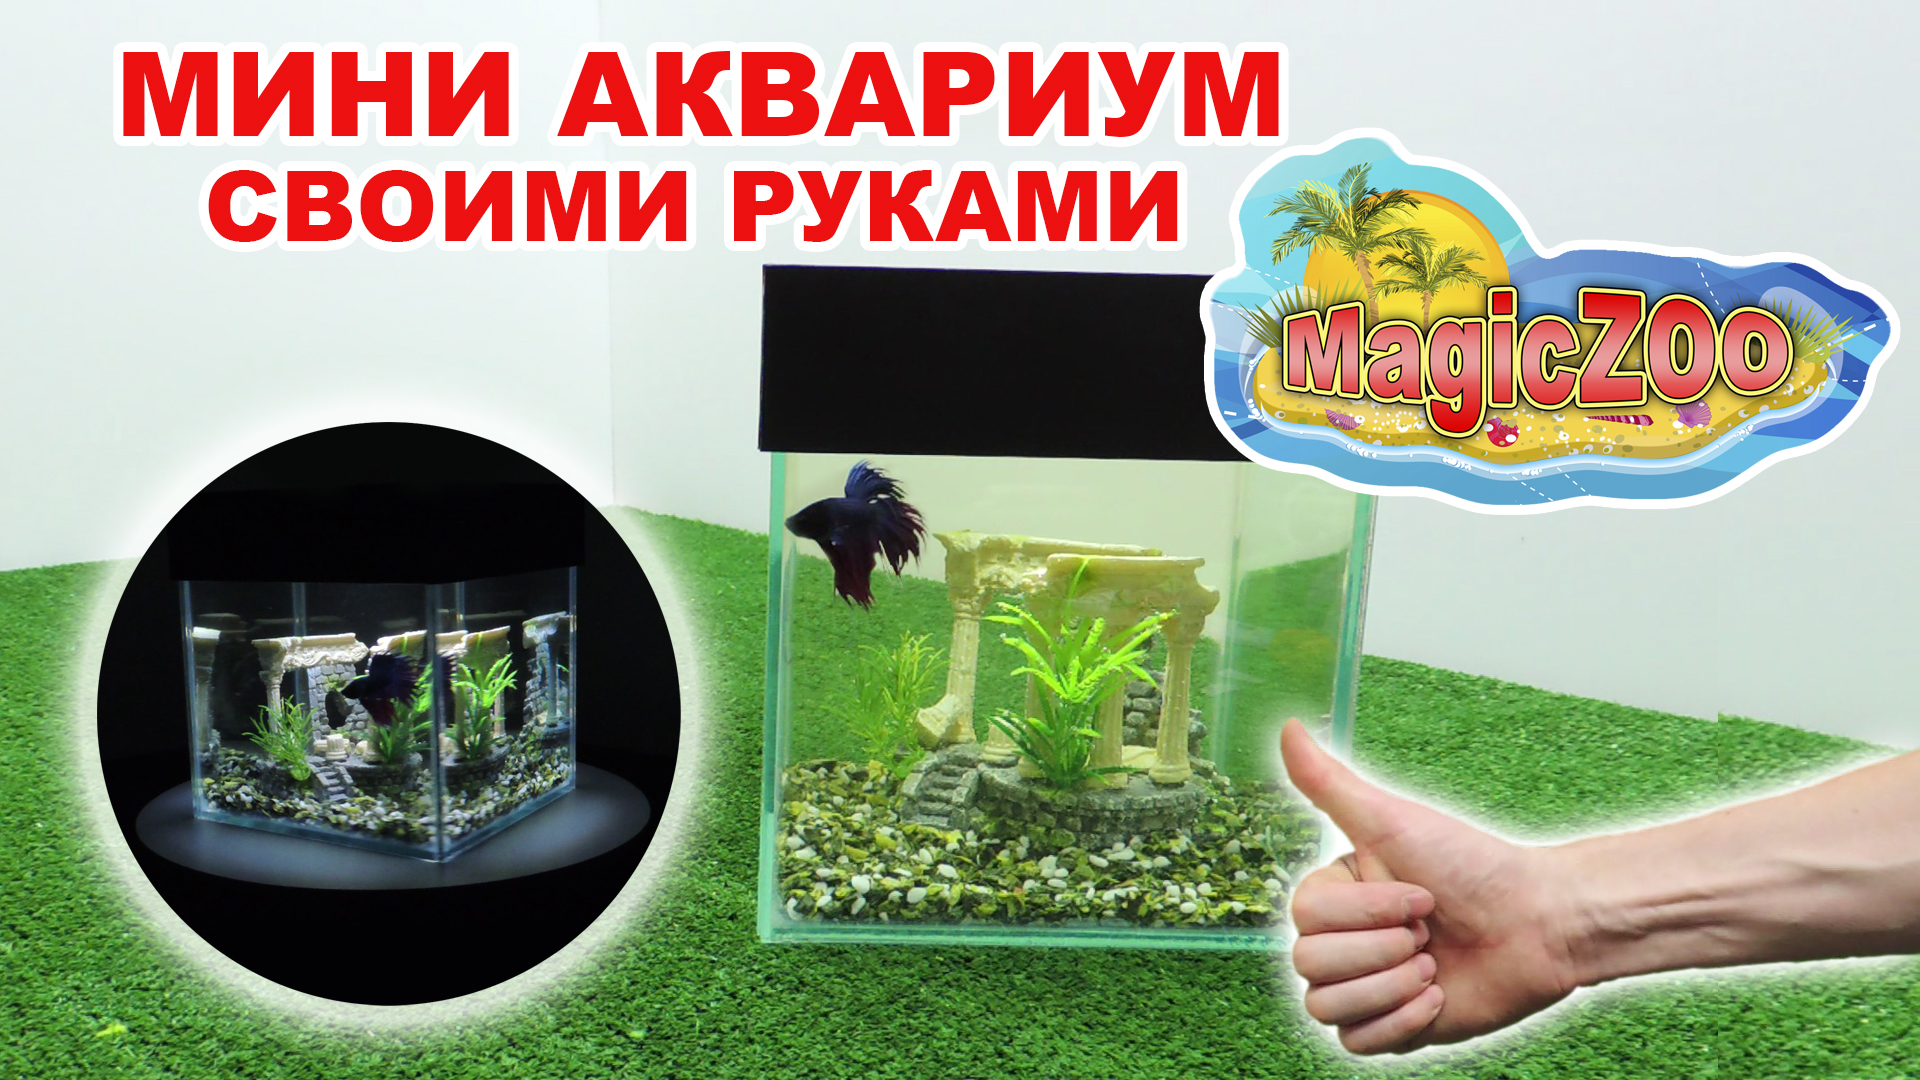 Самодельная крышка для аквариума из пластиковой вагонки